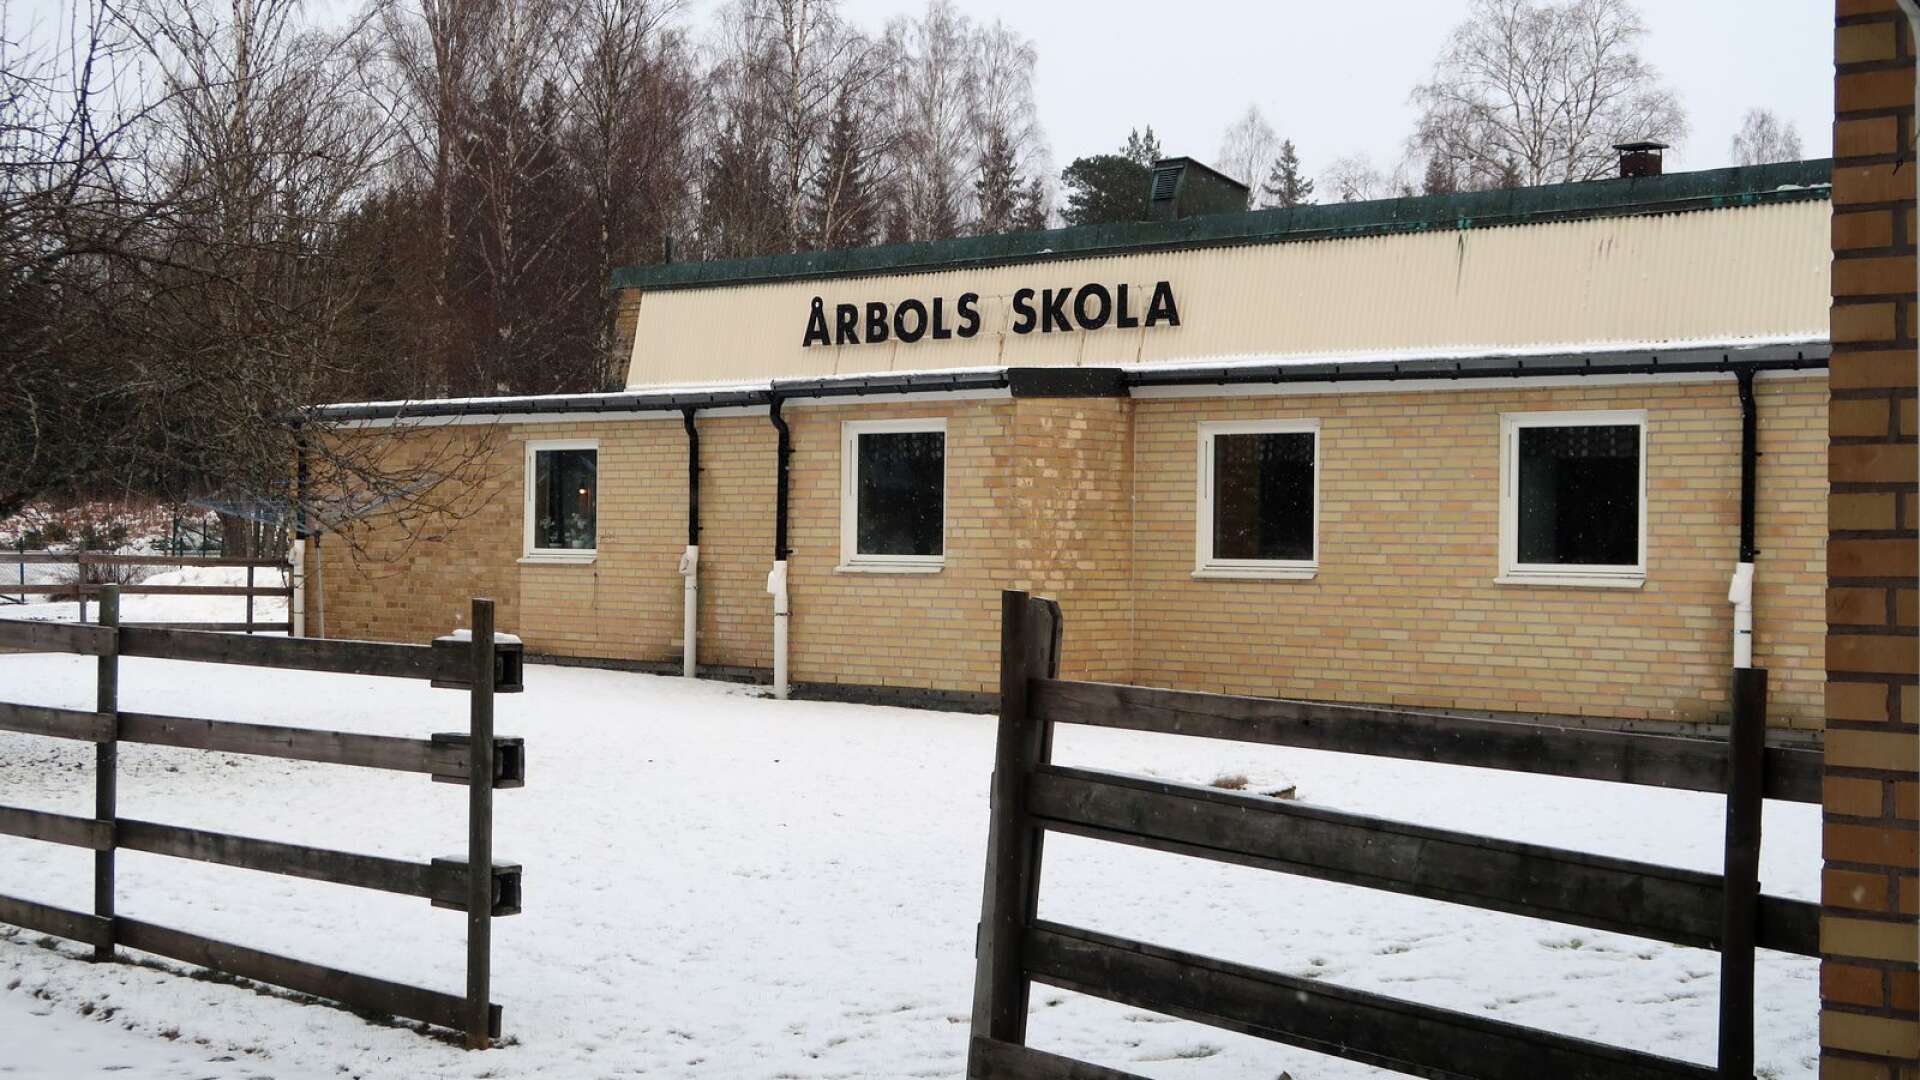 Årbols skola ska säljas. Kommunen ska sälja alla lokaler där man inte har egen verksamhet, menar kommunstyrelsens ordförande Stig Bertilsson (M).